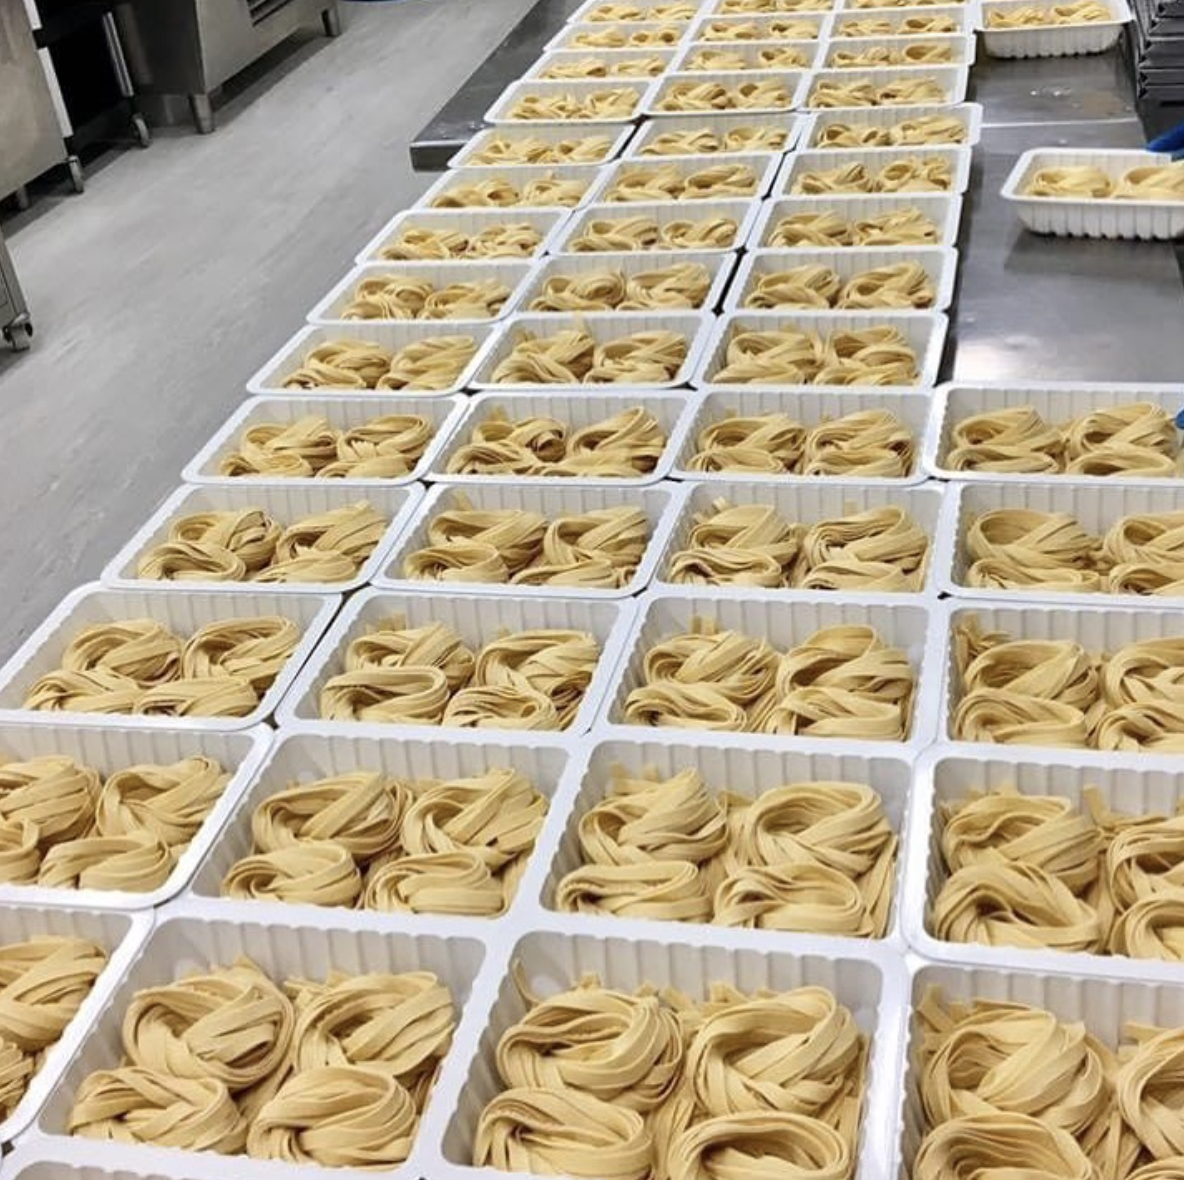 Victorian pasta maker